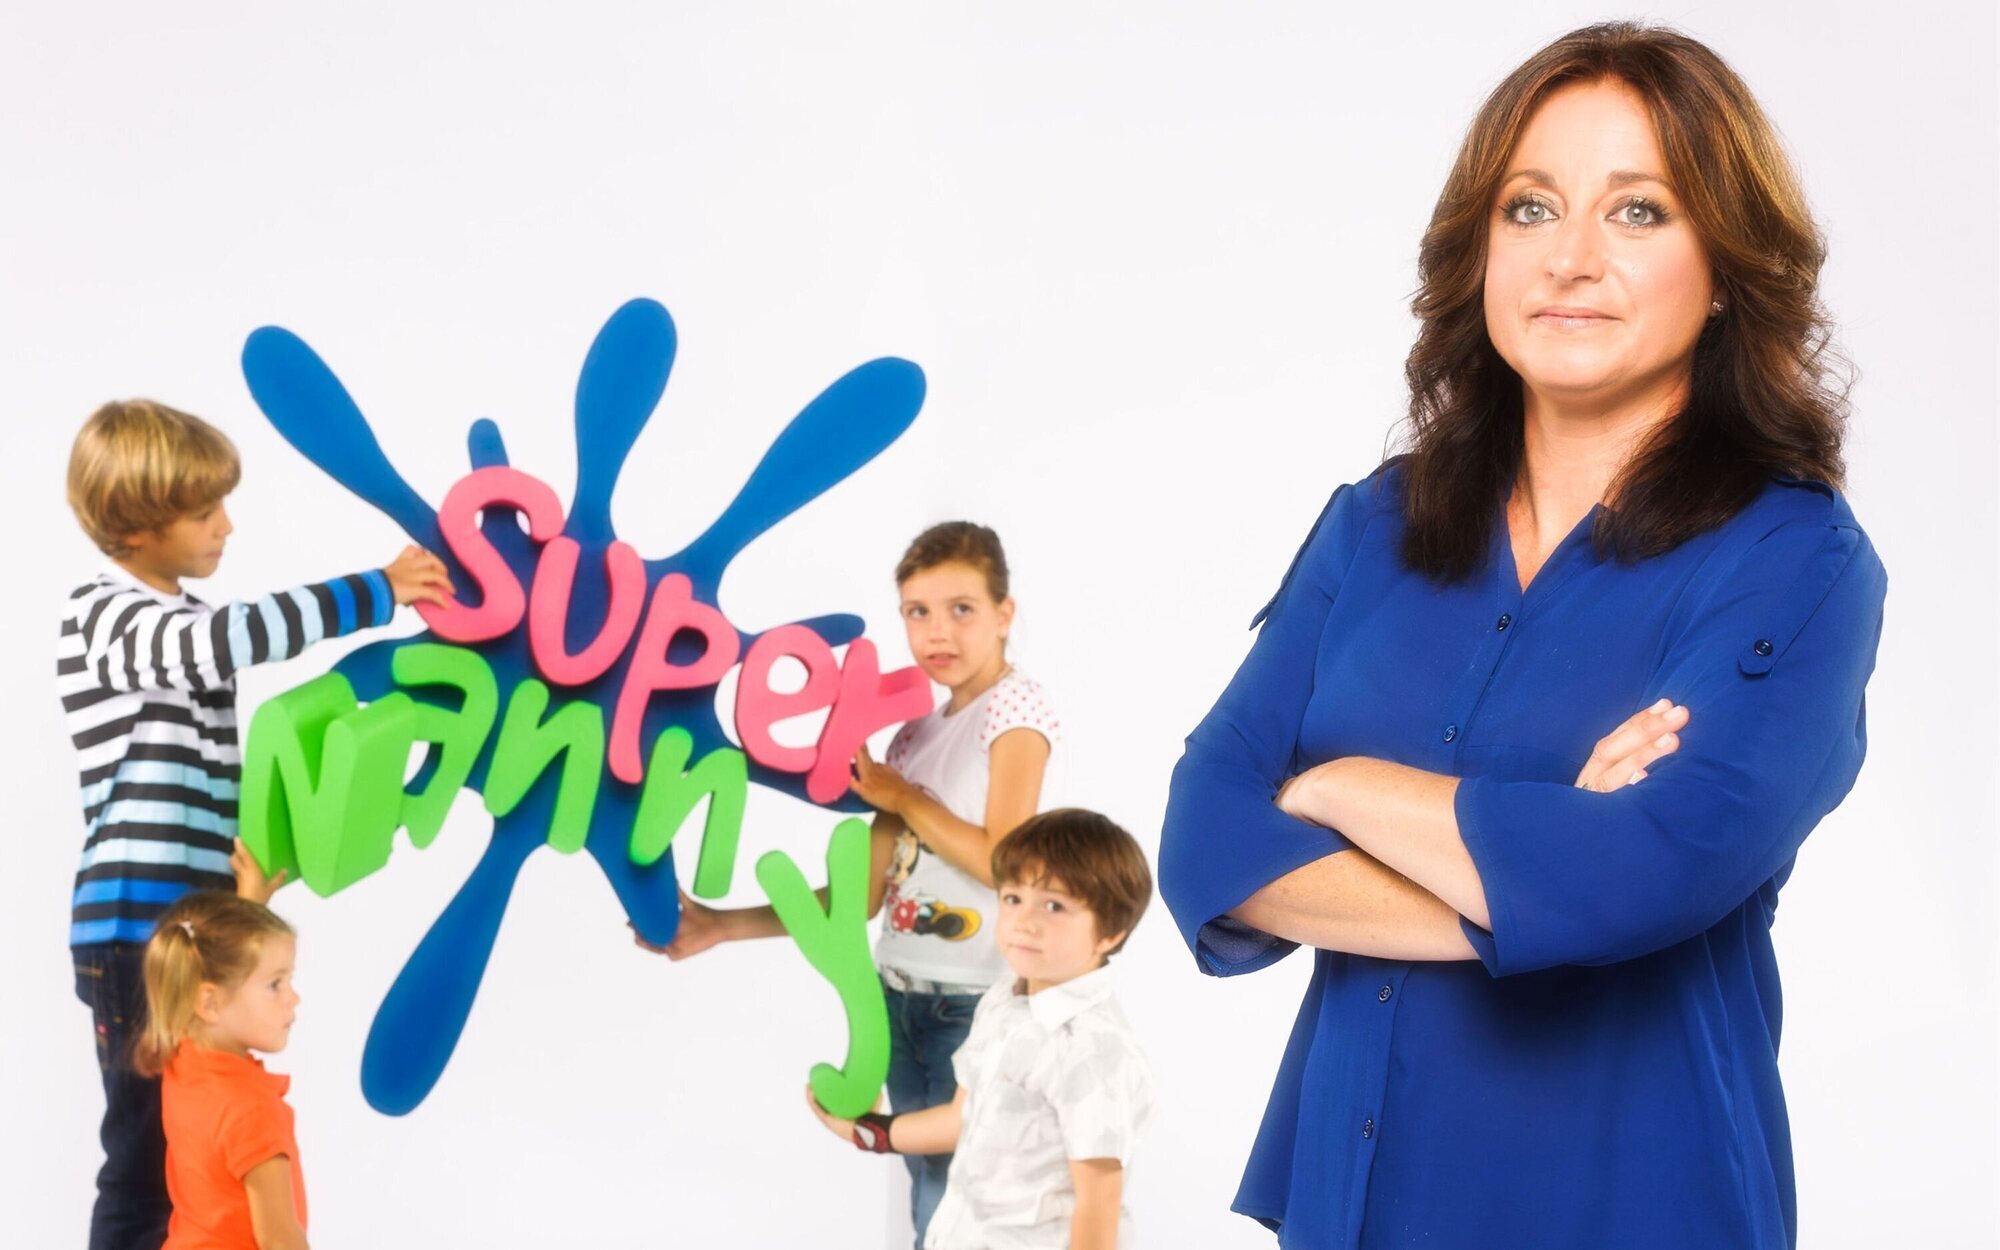 TVE mantiene la incógnita sobre si se llegará a emitir 'Supernanny' y pausa la renovación de 'La promesa'